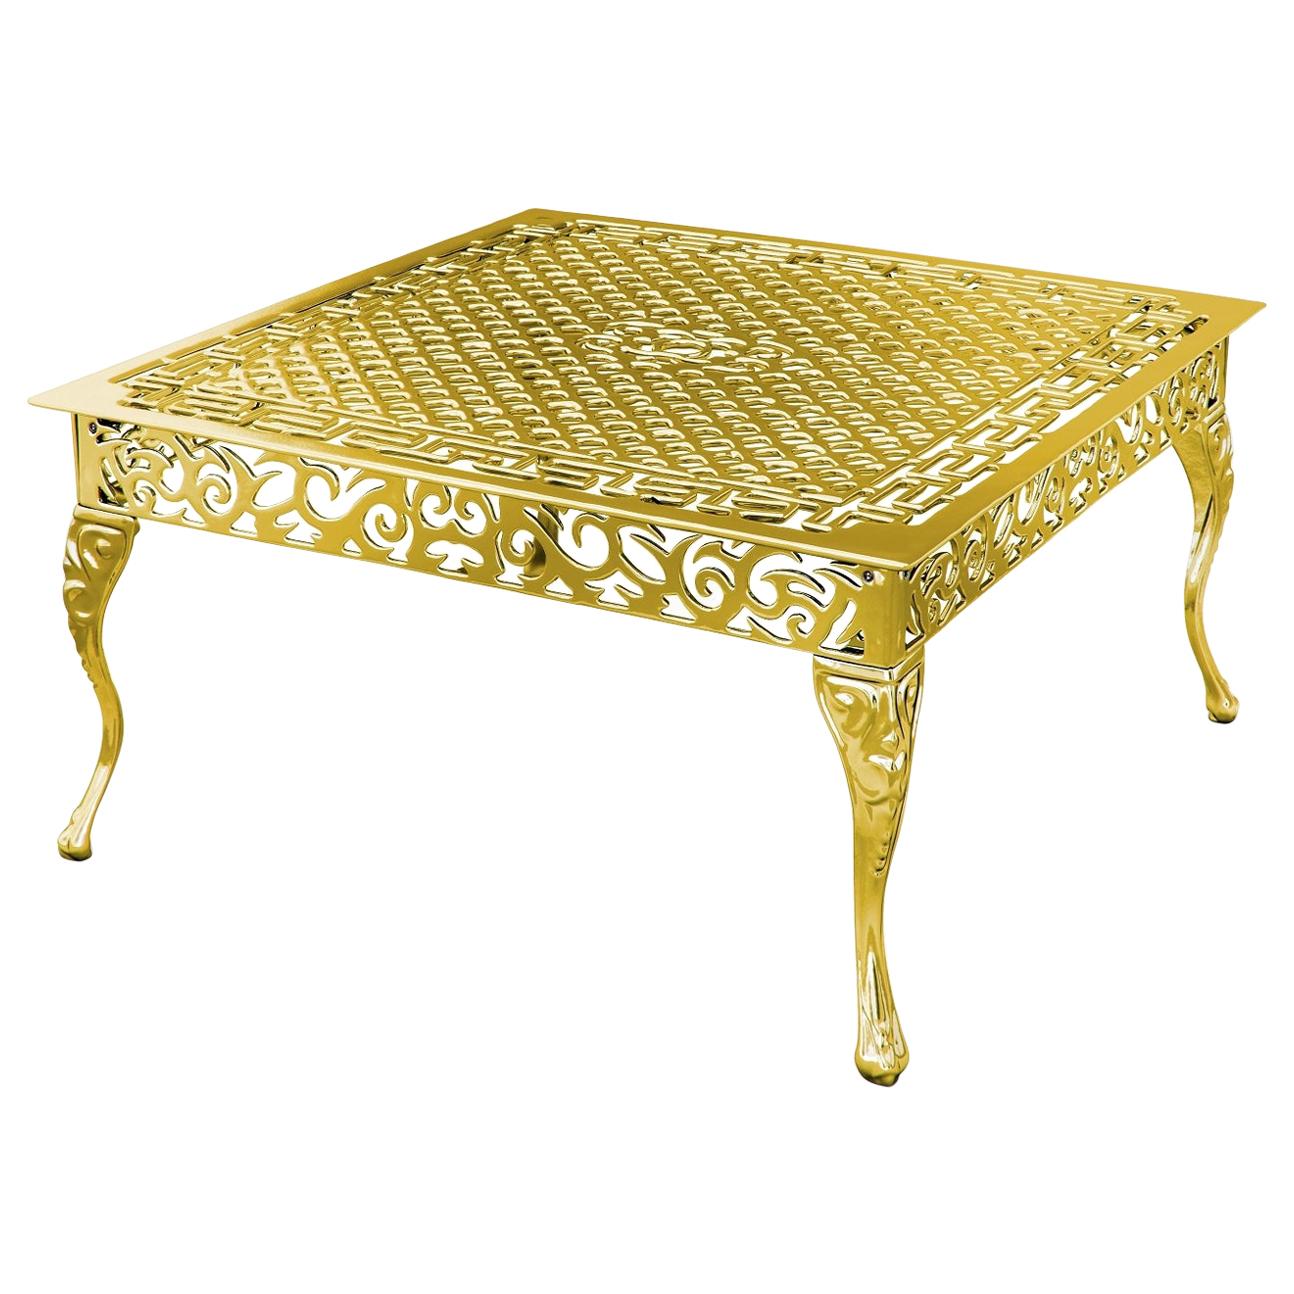 Table basse d'extérieur Cama avec finition dorée, fabriquée en Italie